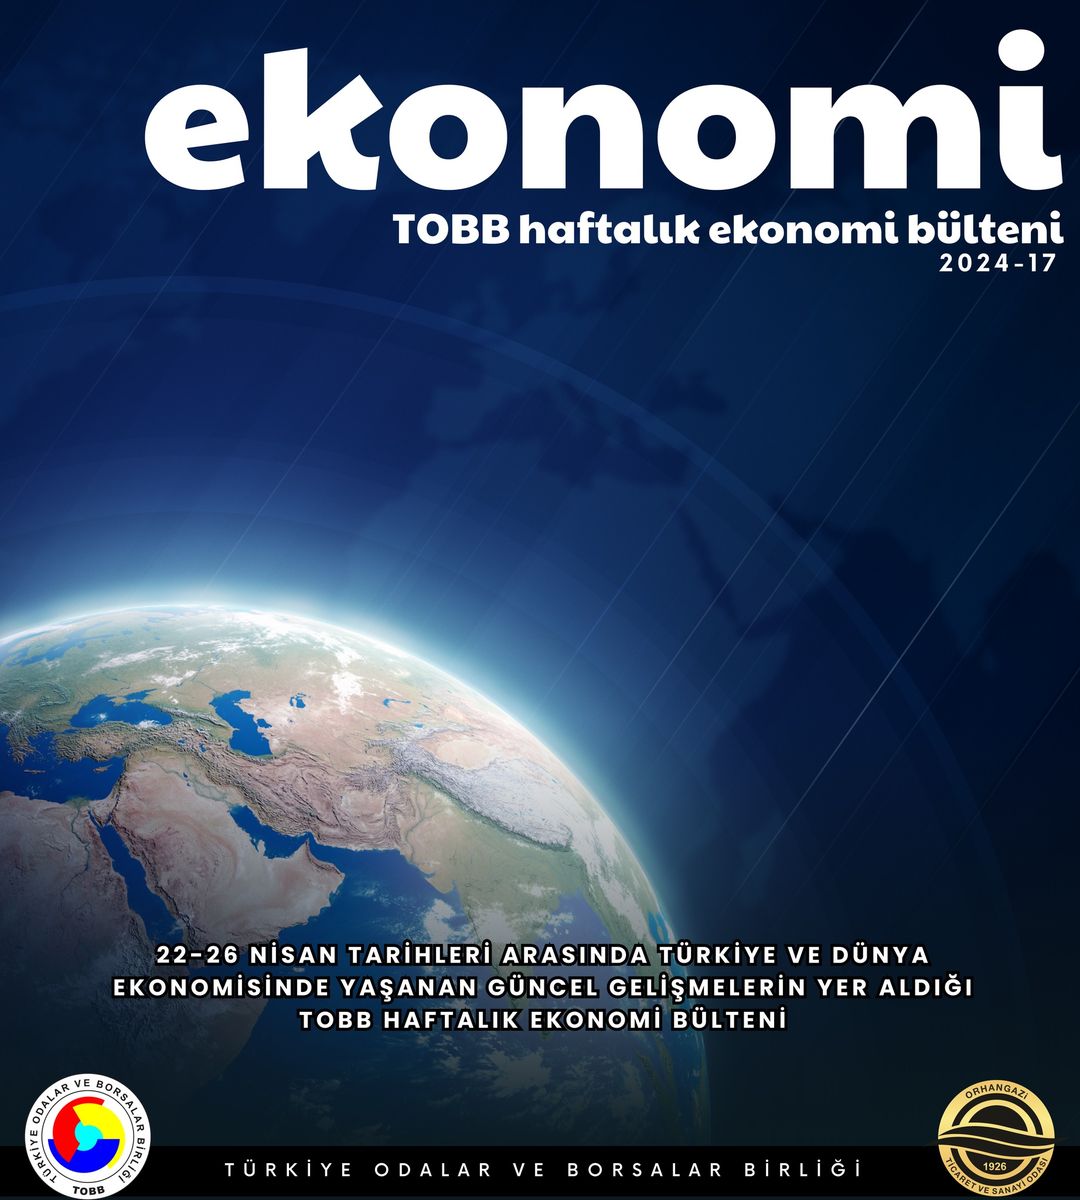 TOBB'dan Ekonomide Dikkat Çeken Değerlendirmeler: Yerel ve Uluslararası Beklentiler